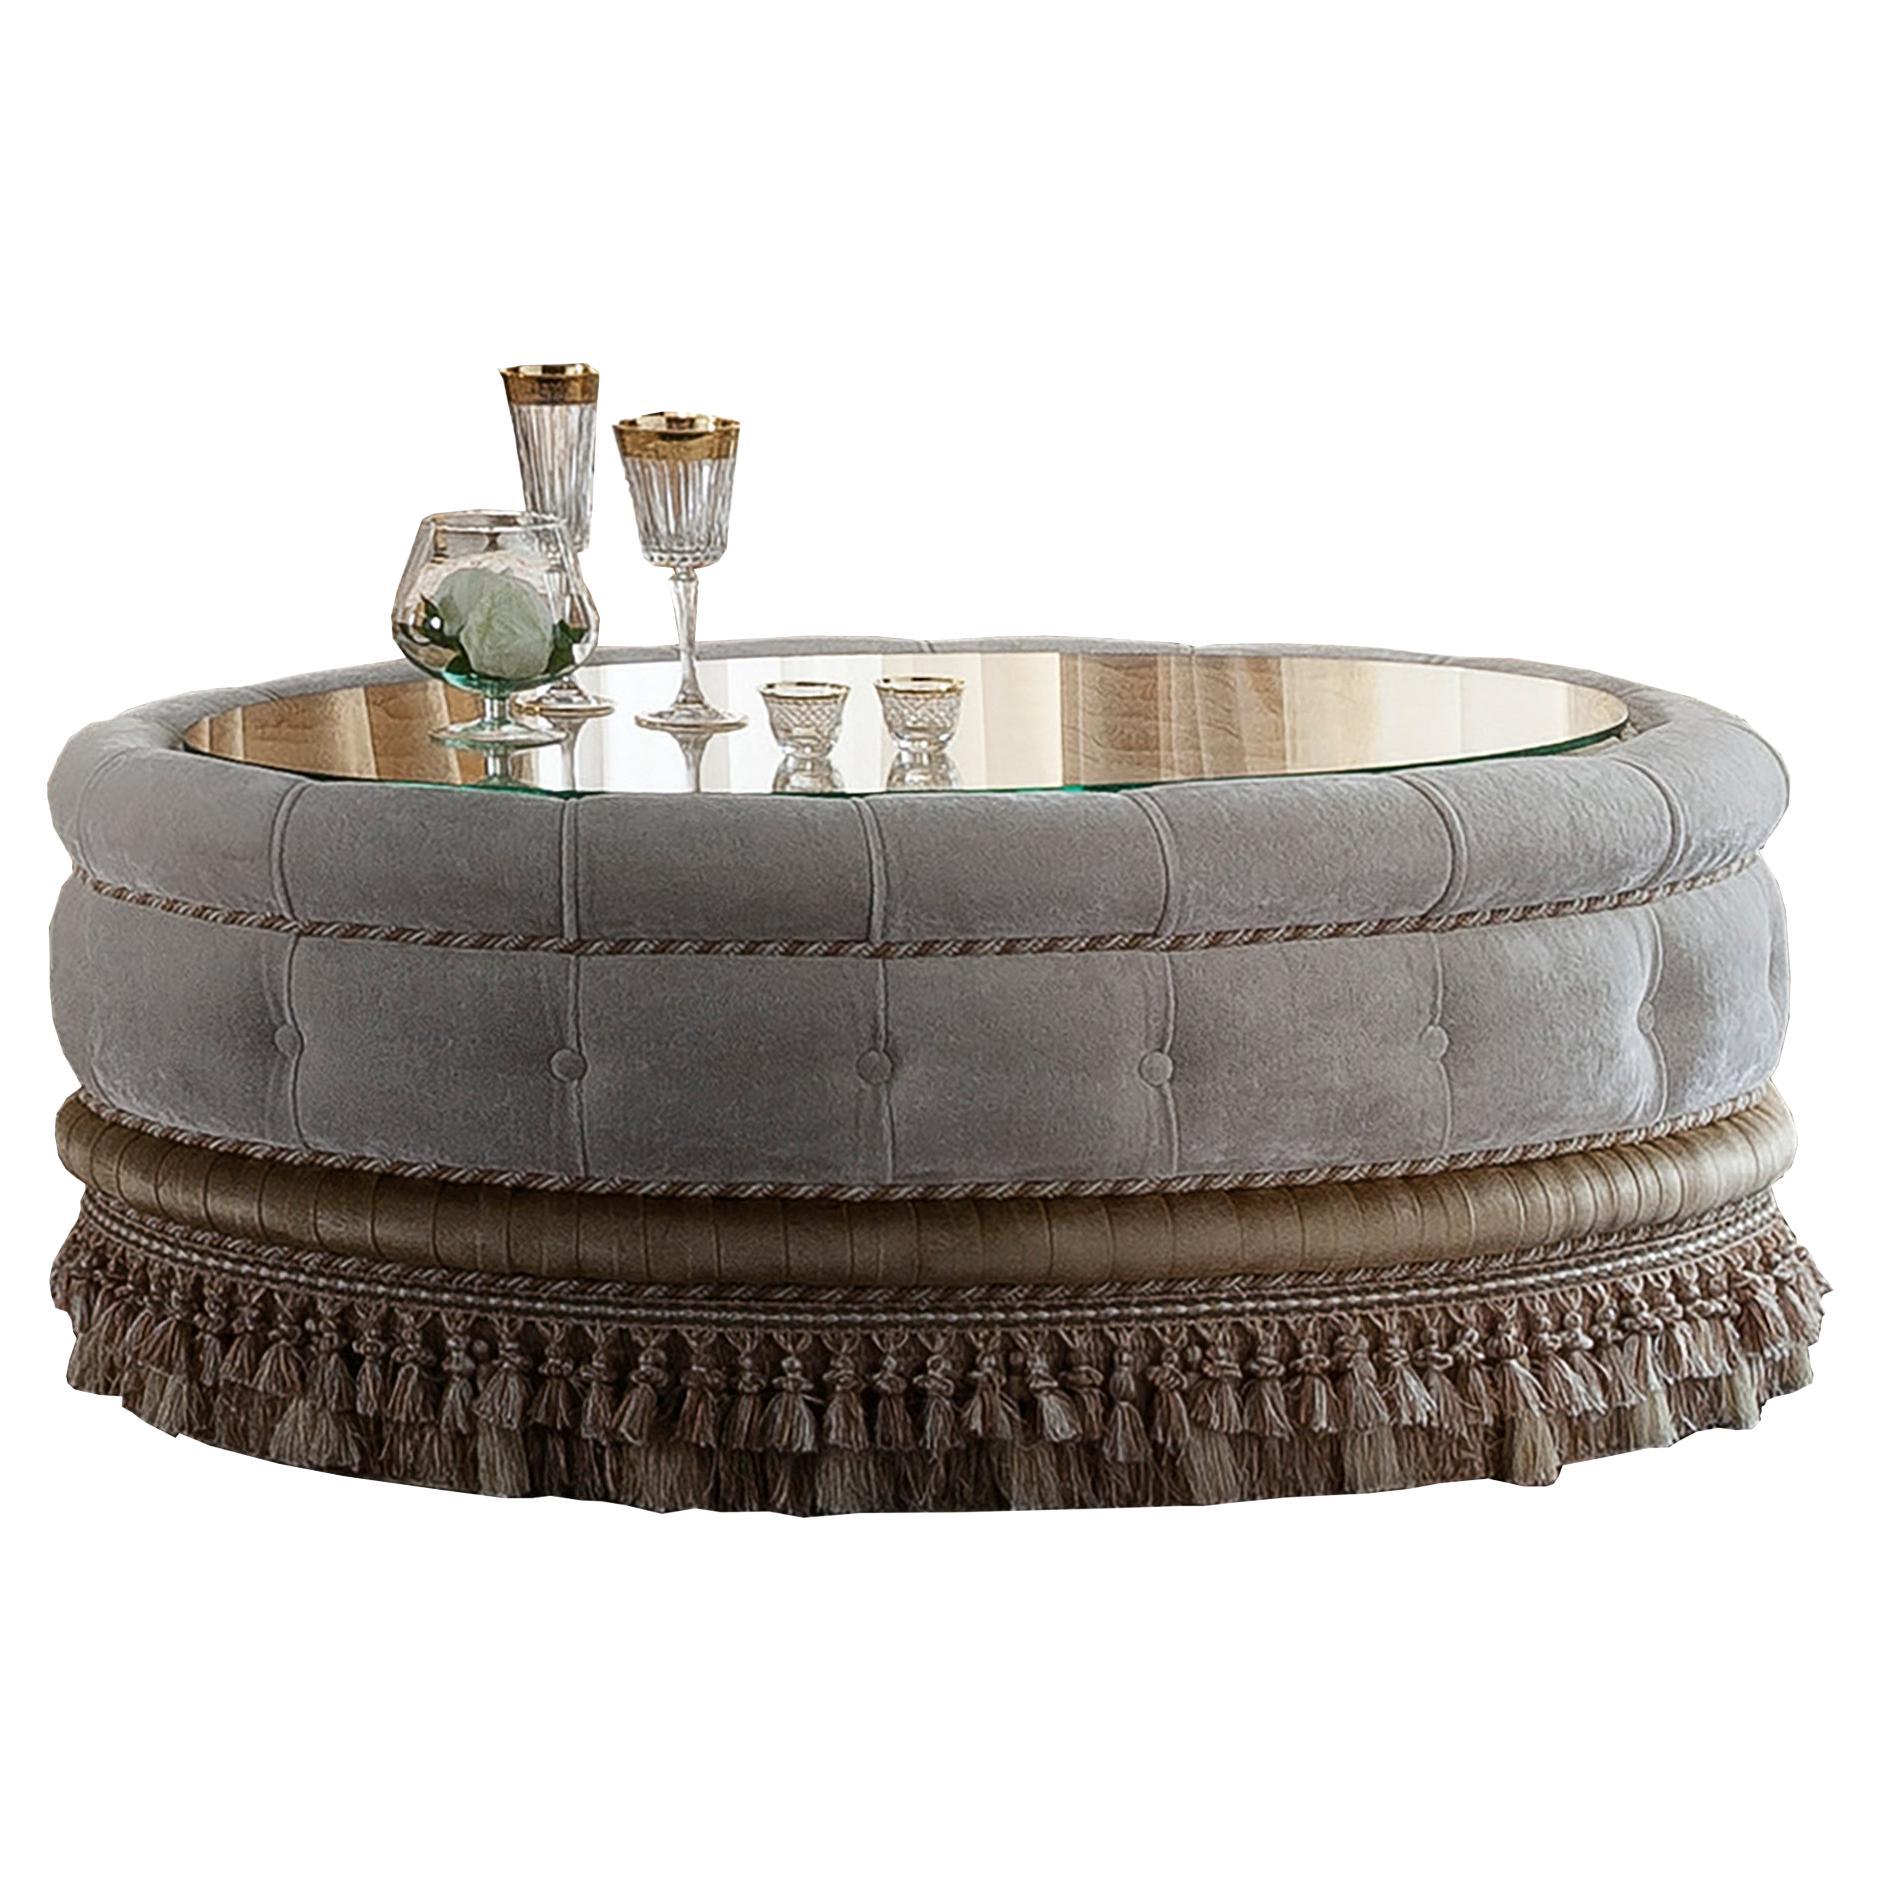 Ovaler gepolsterter Couchtisch von Modenese Luxury Interiors